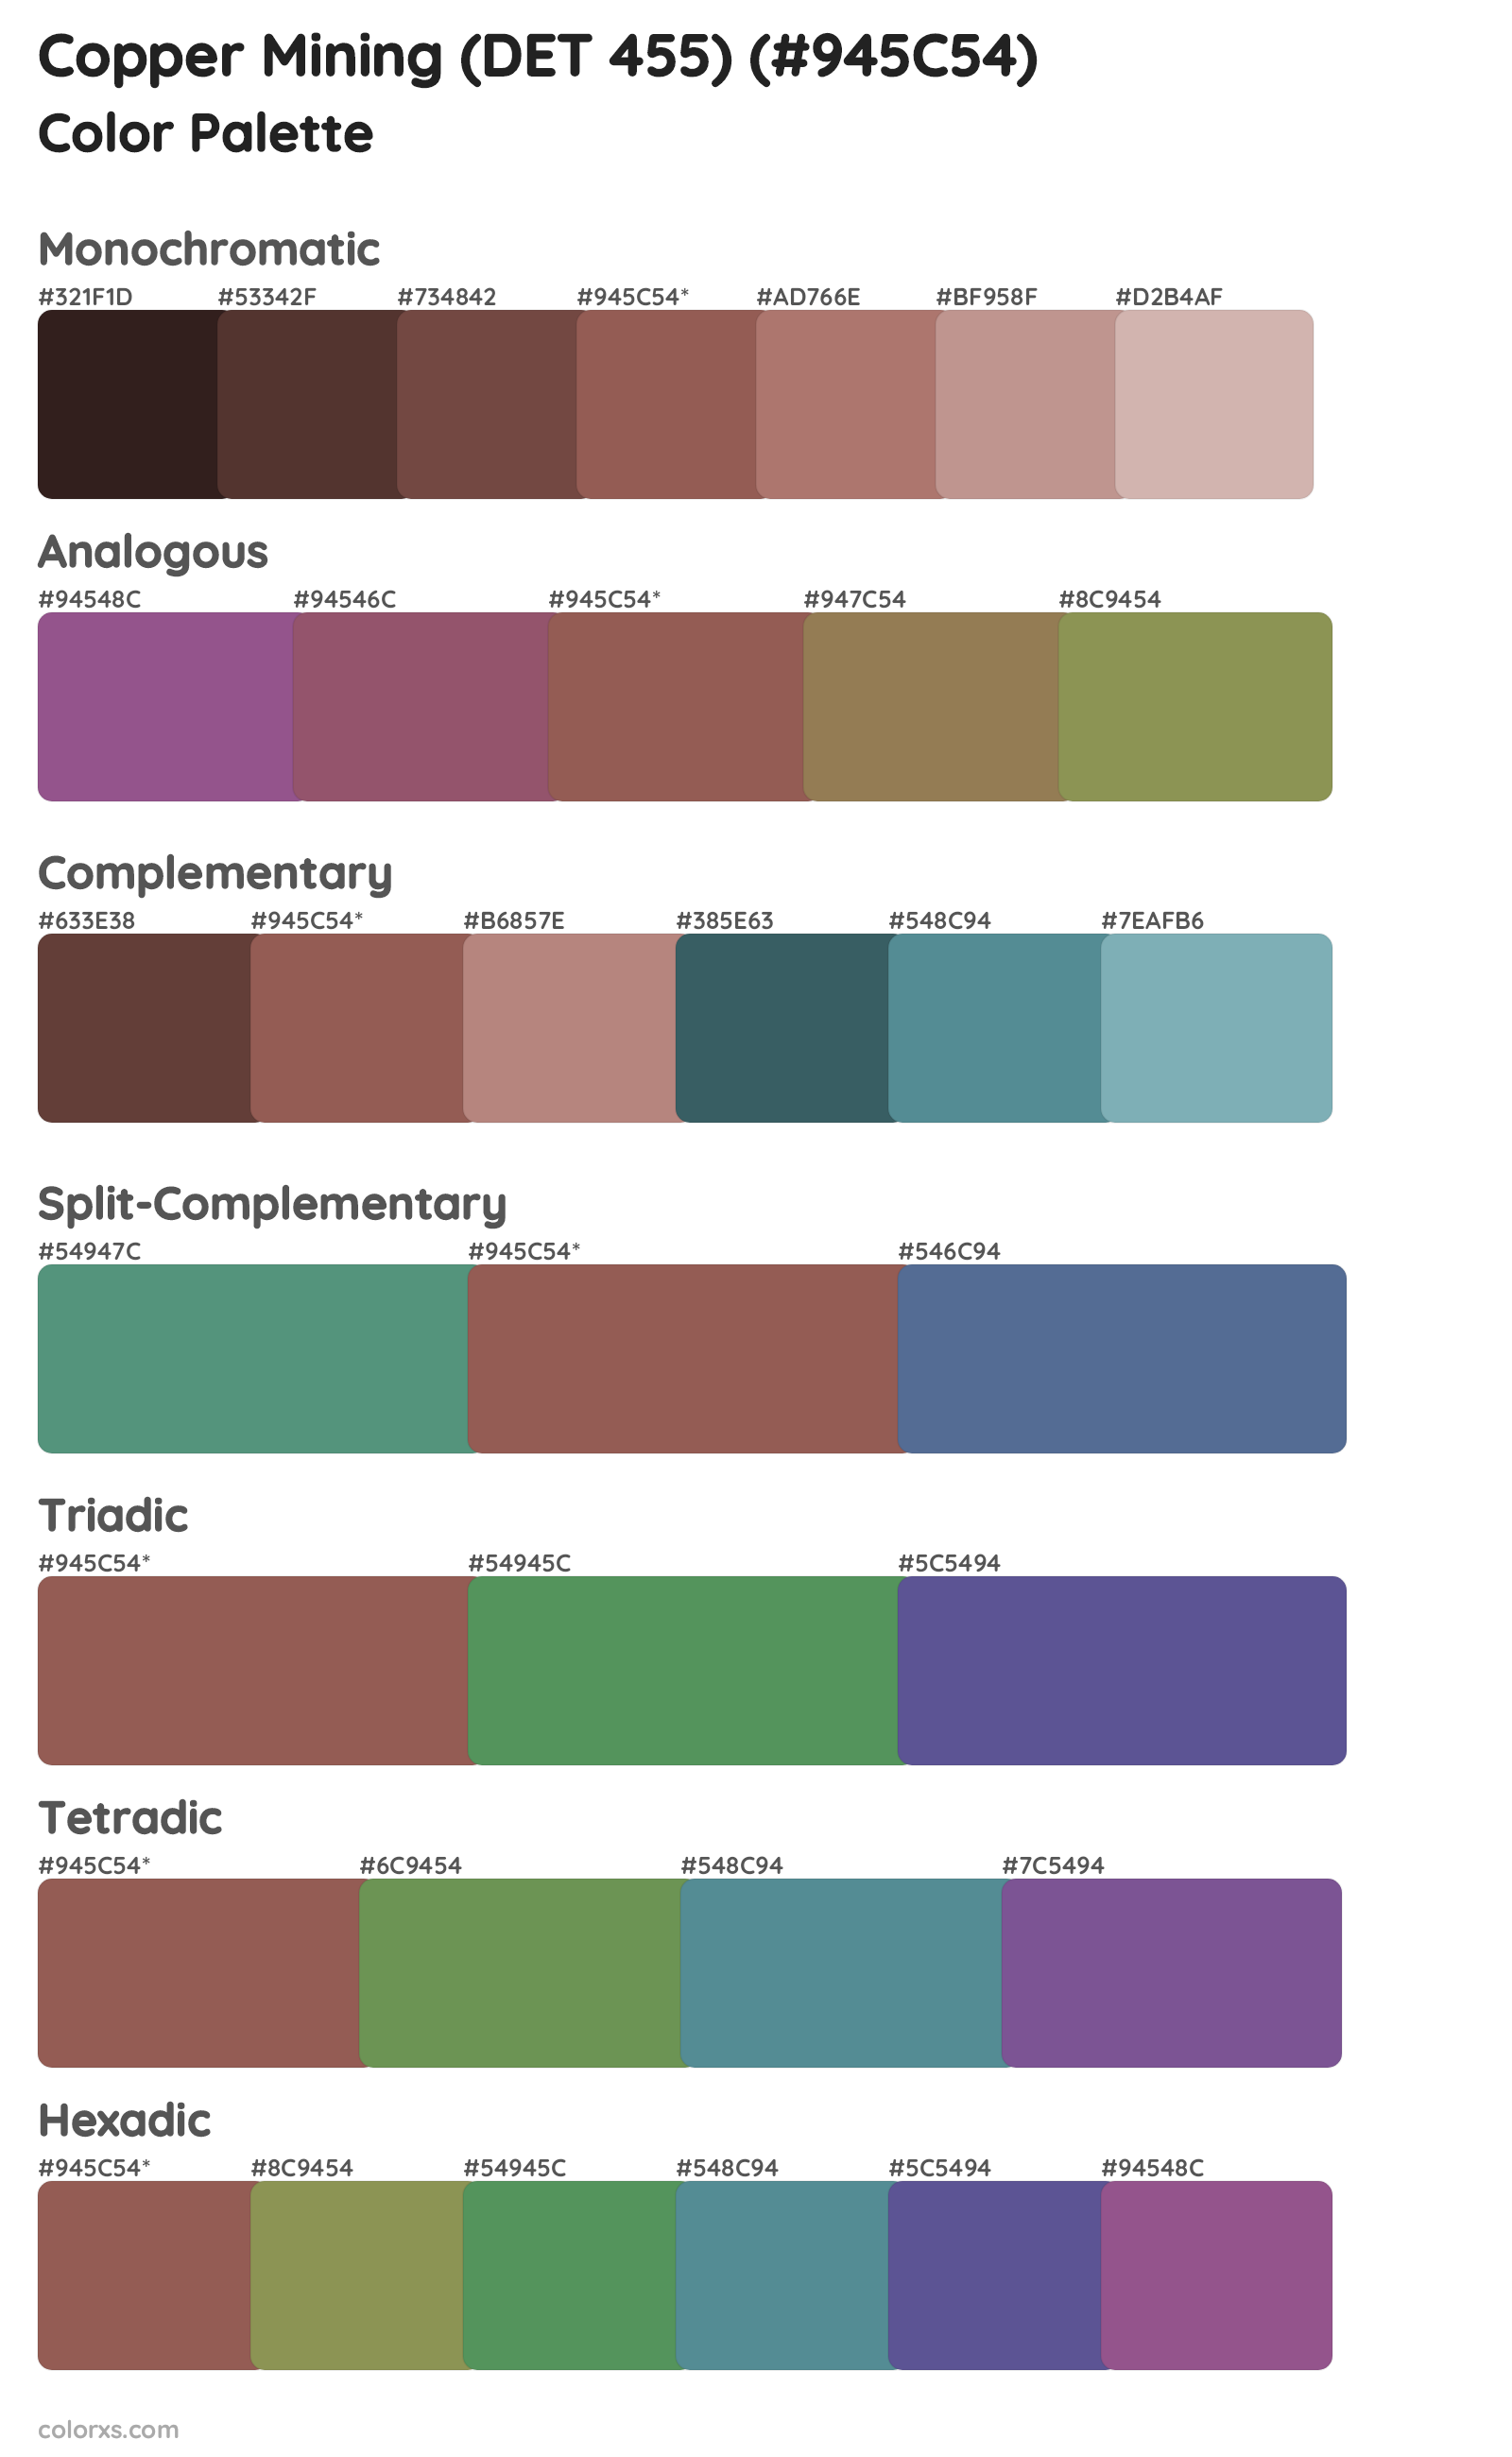 Copper Mining (DET 455) Color Scheme Palettes